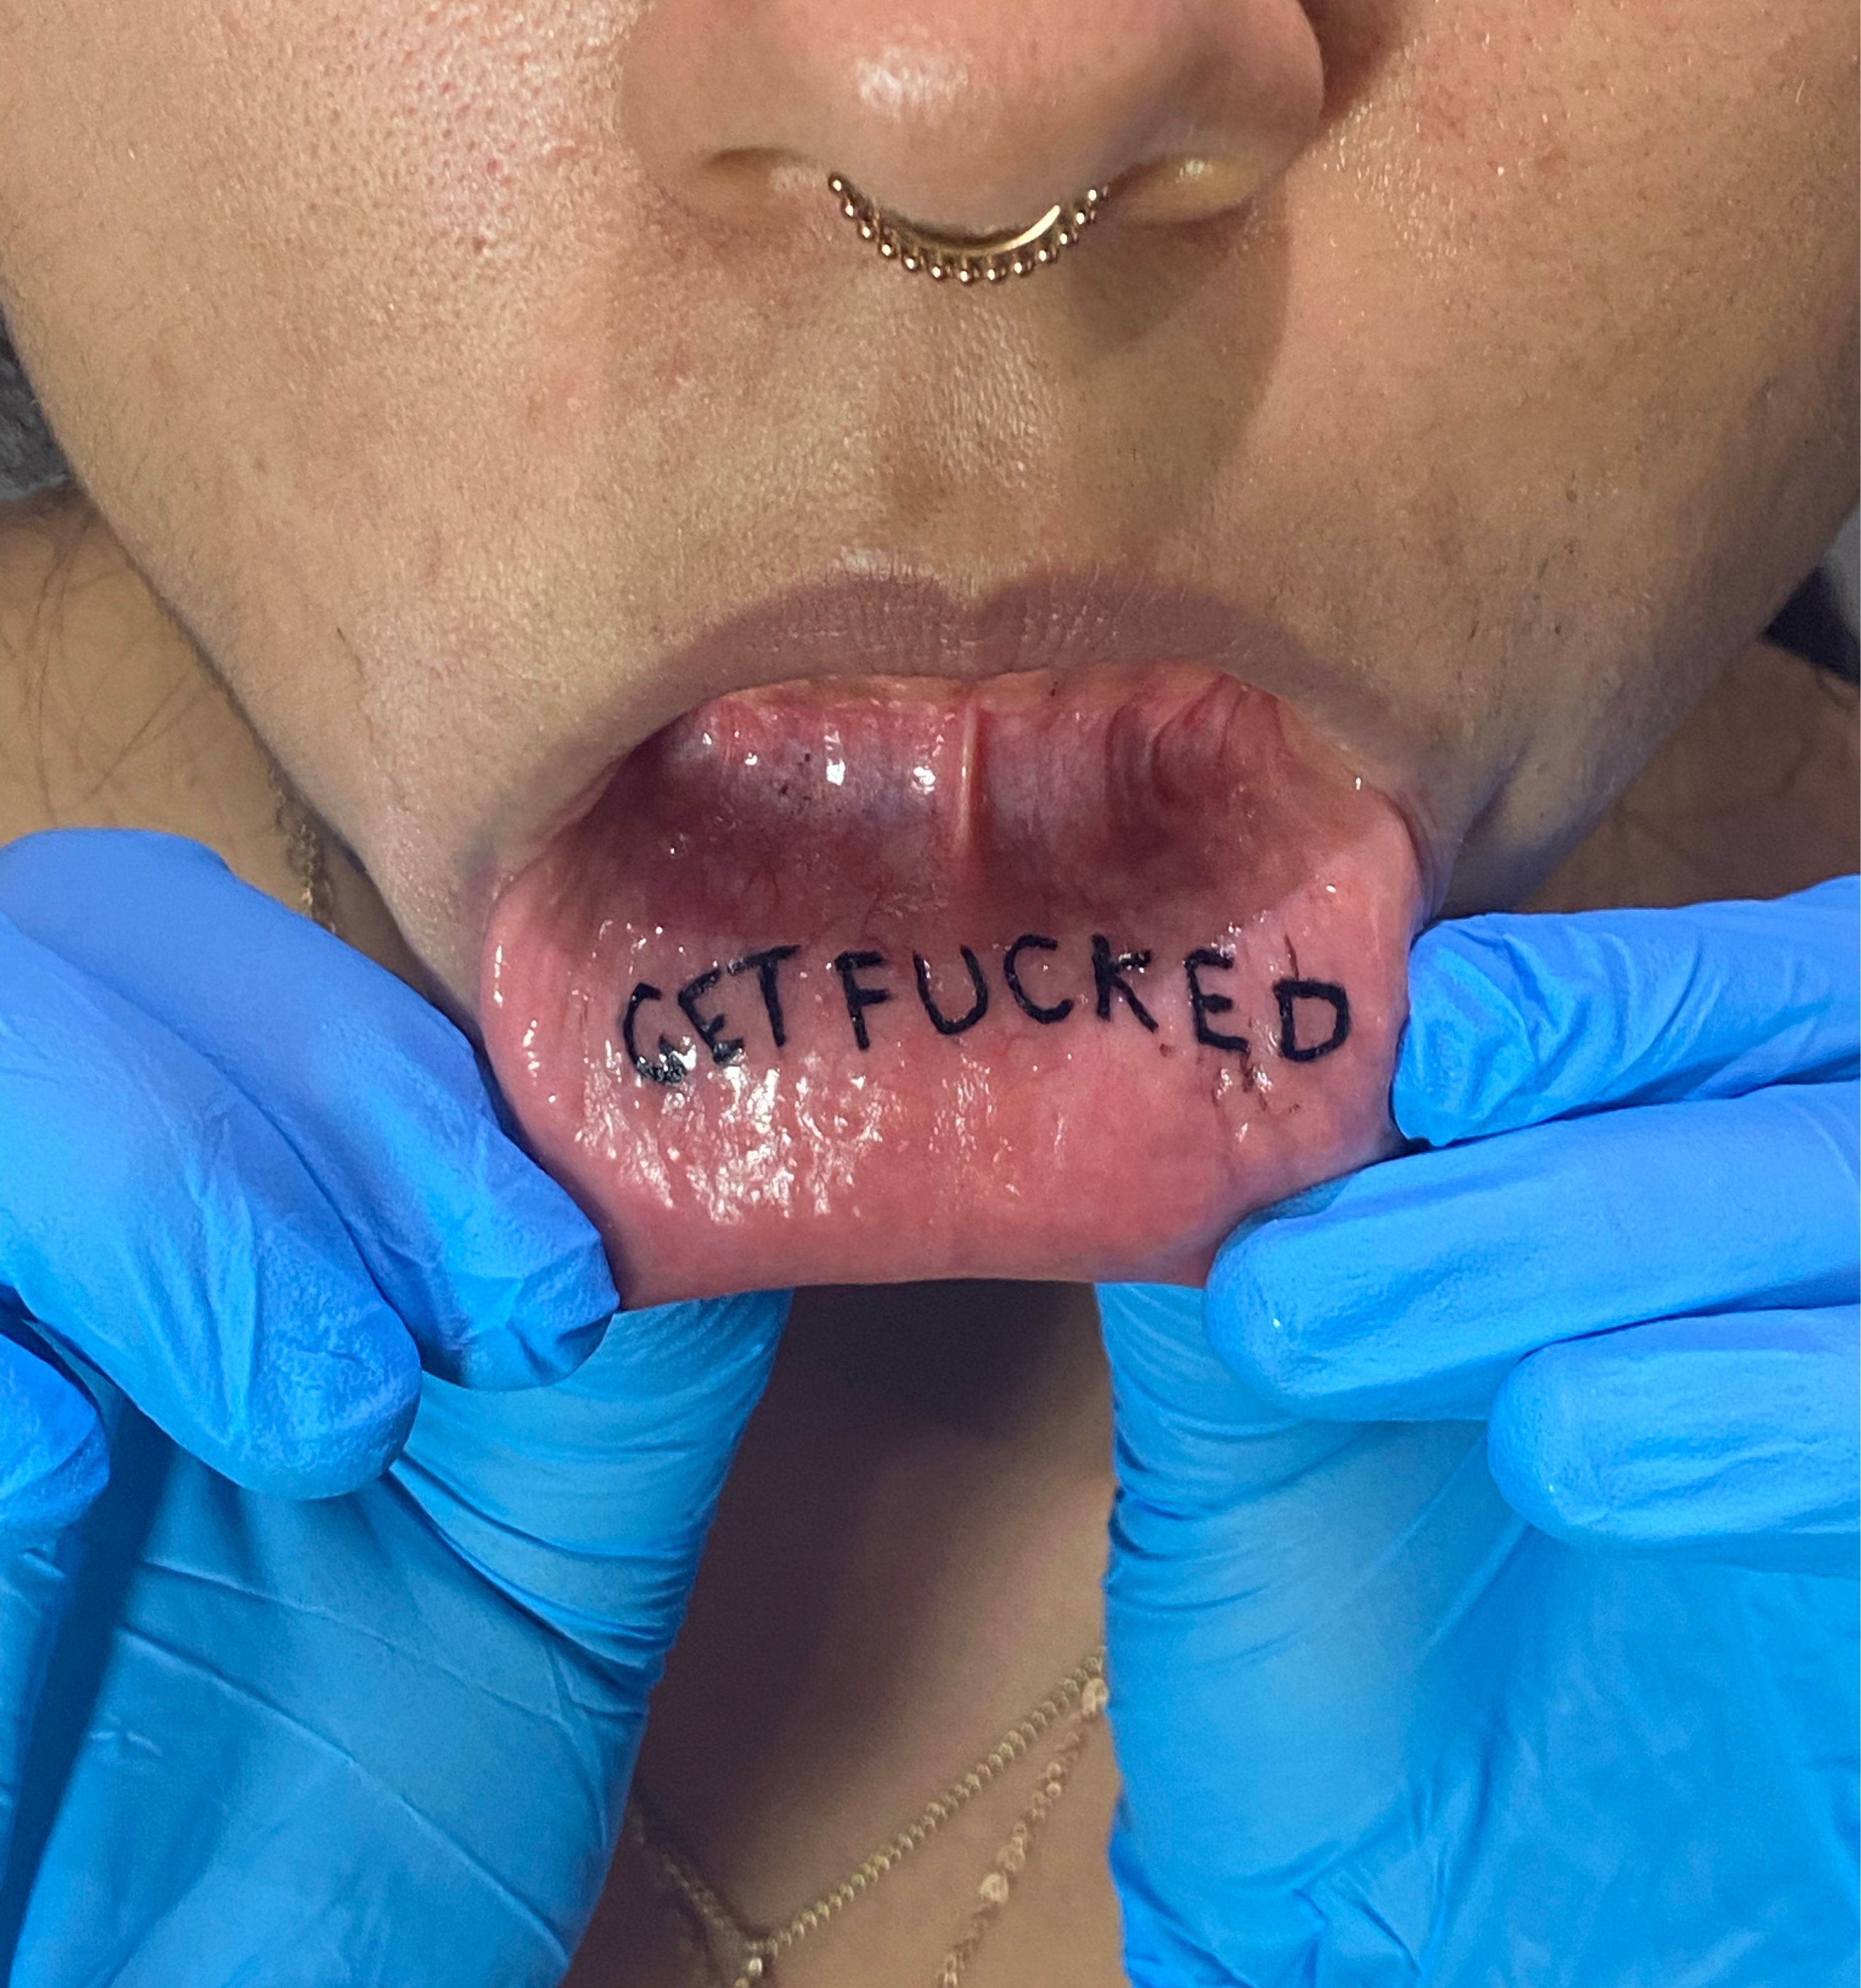 Tattoo uploaded by Rachael • GET FUCKED lip tattoo love it • Tattoodo